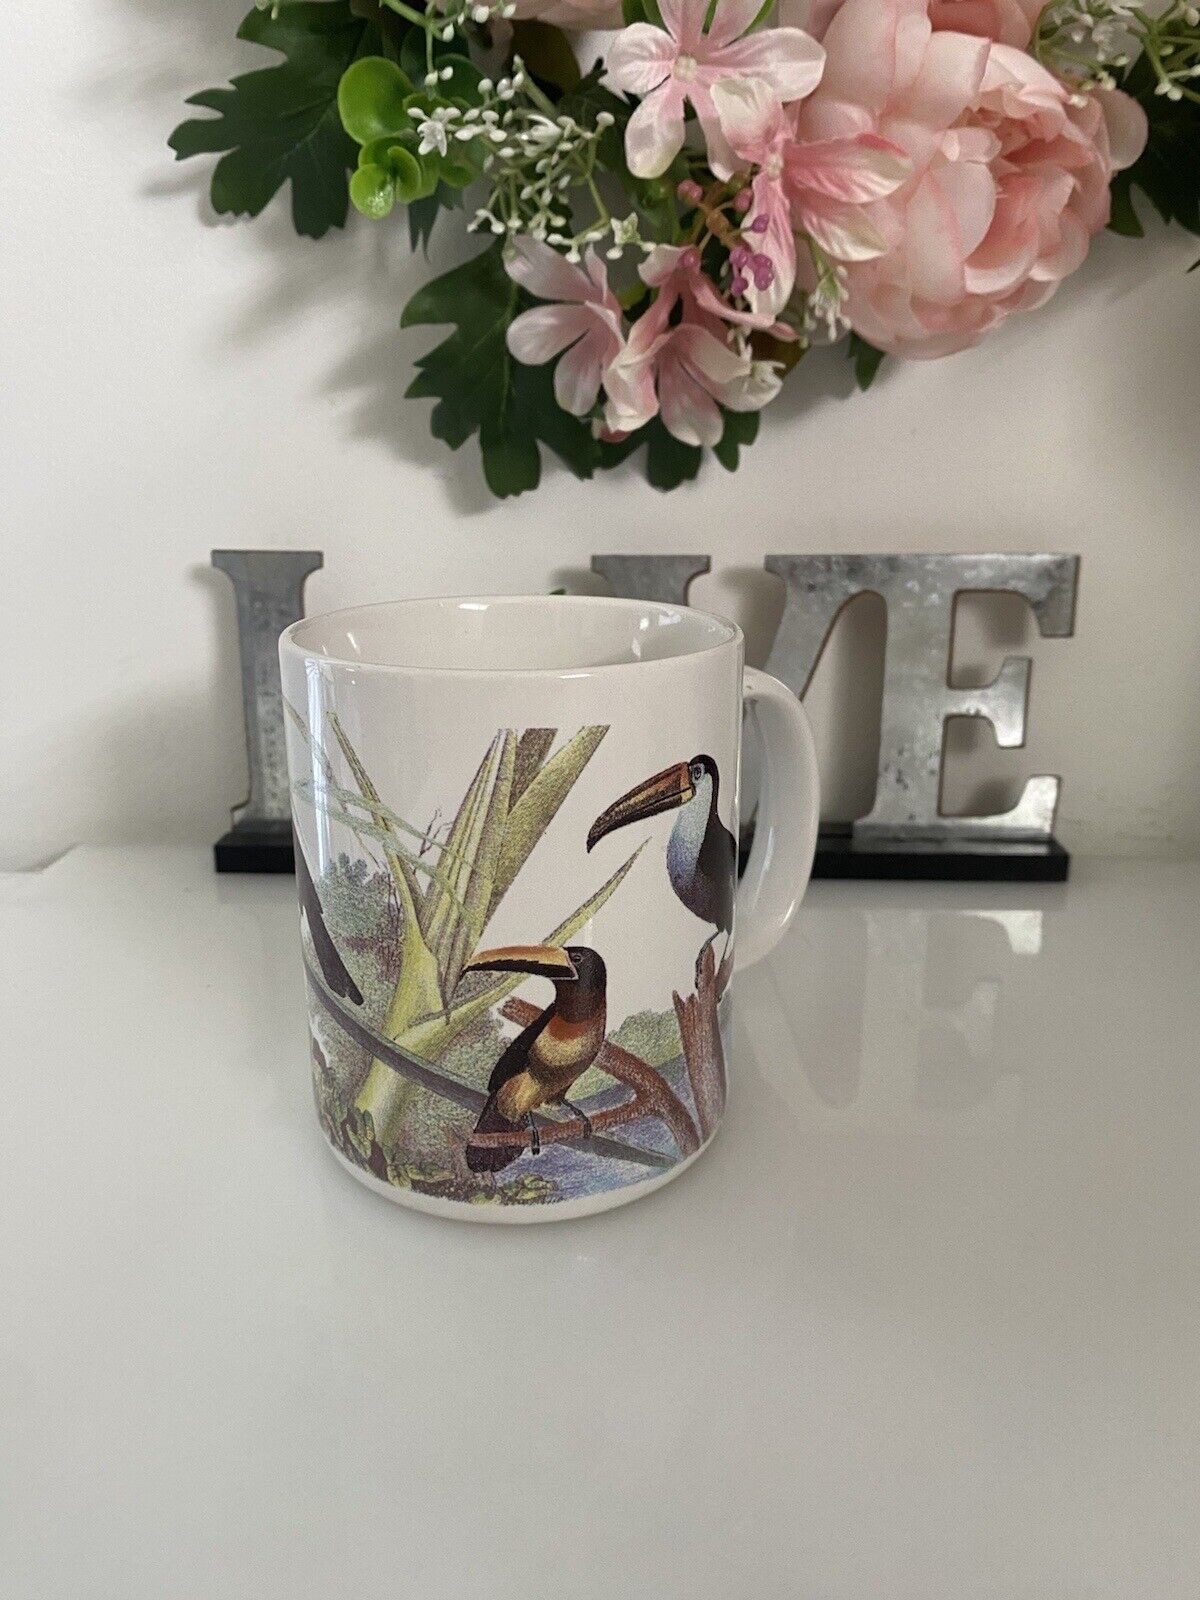 The Nature Company 1990 Coffee Mug 12oz Toucan Exotic Birds Vtg Rare Collectible